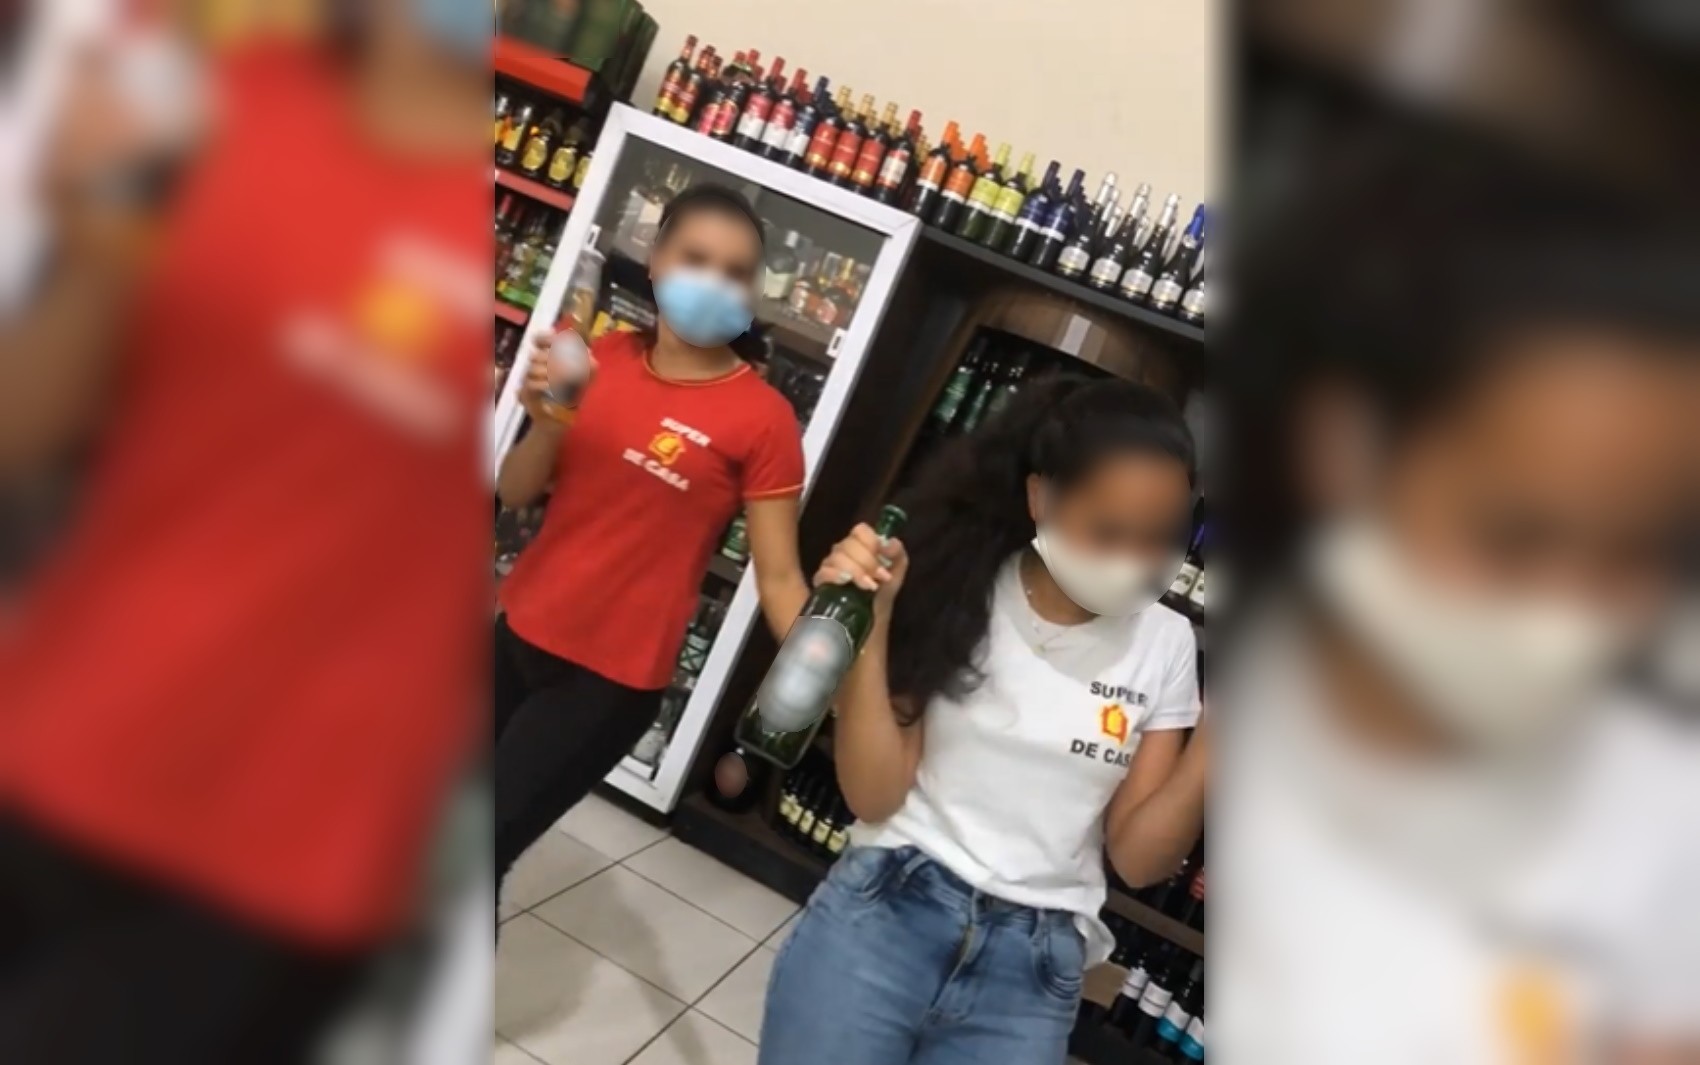 Adolescentes aparecem em propaganda de bebidas alcoólicas de supermercado em São Luís de Montes Belos; vídeo